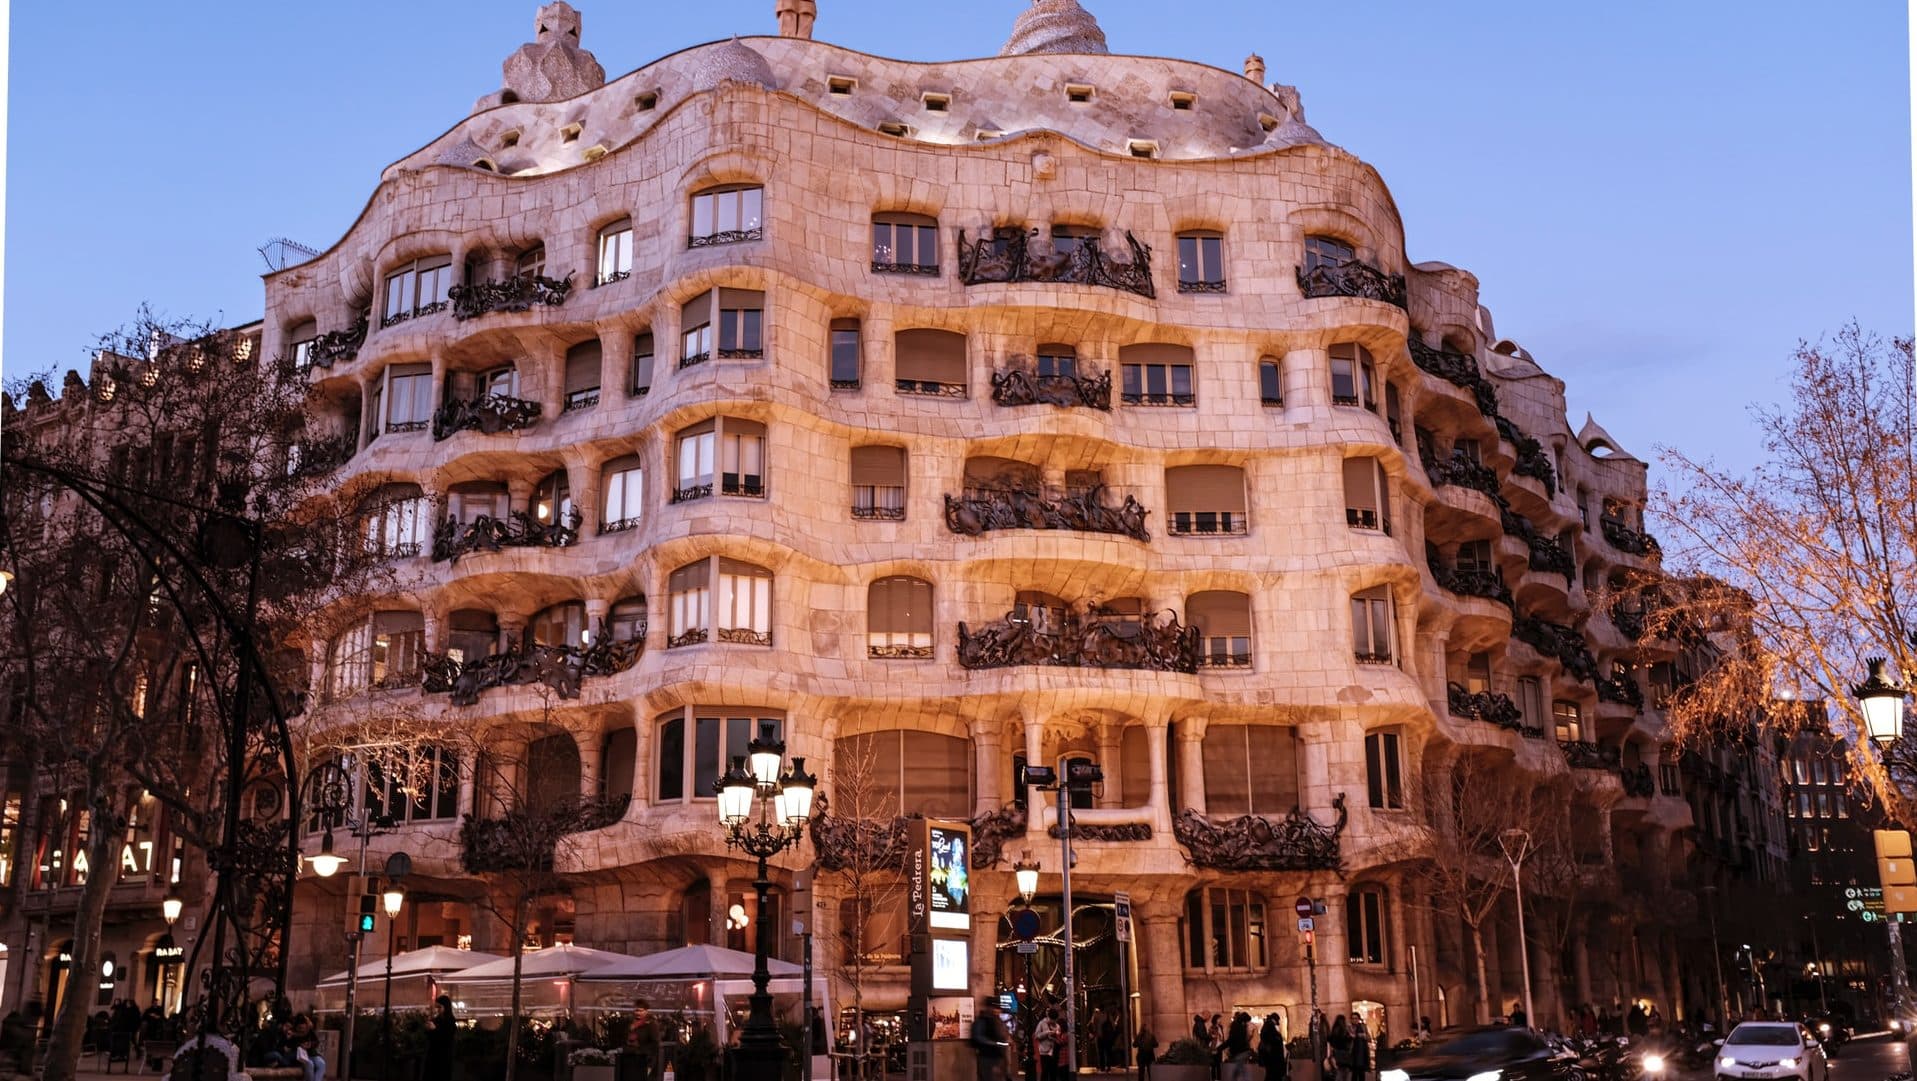 La Pedrera és una de les obres mestres arquitectòniques de Barcelona